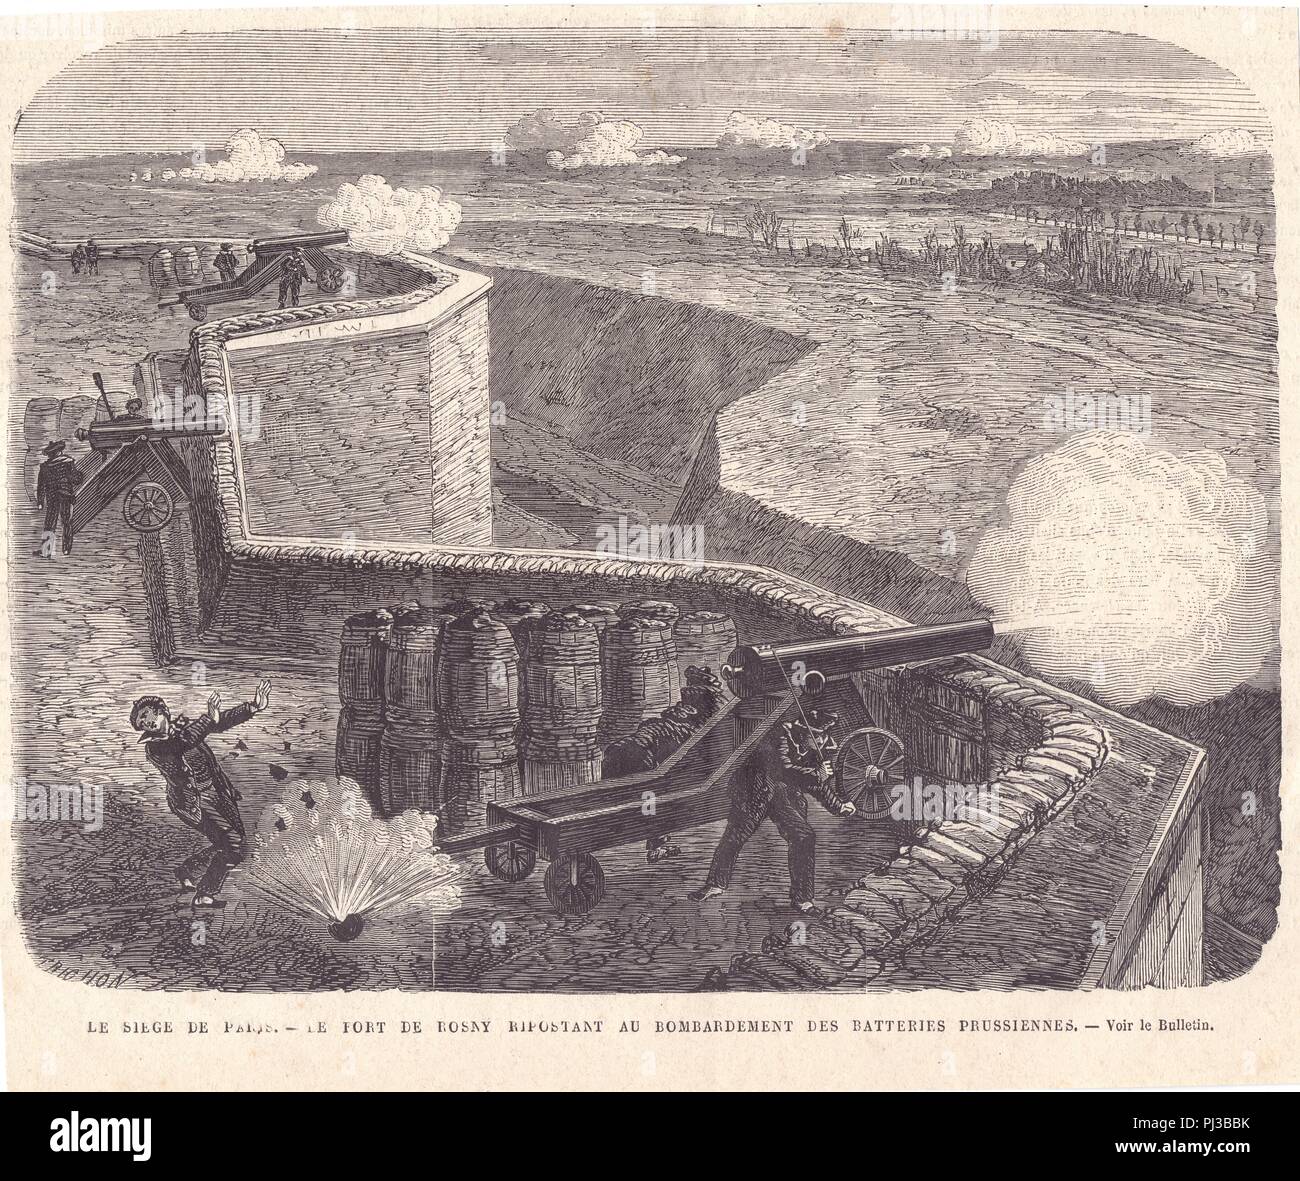 Le Siège de Paris - le Fort de Rosny ripotant au Bombardement des Batteries  Prusiennes Foto stock - Alamy